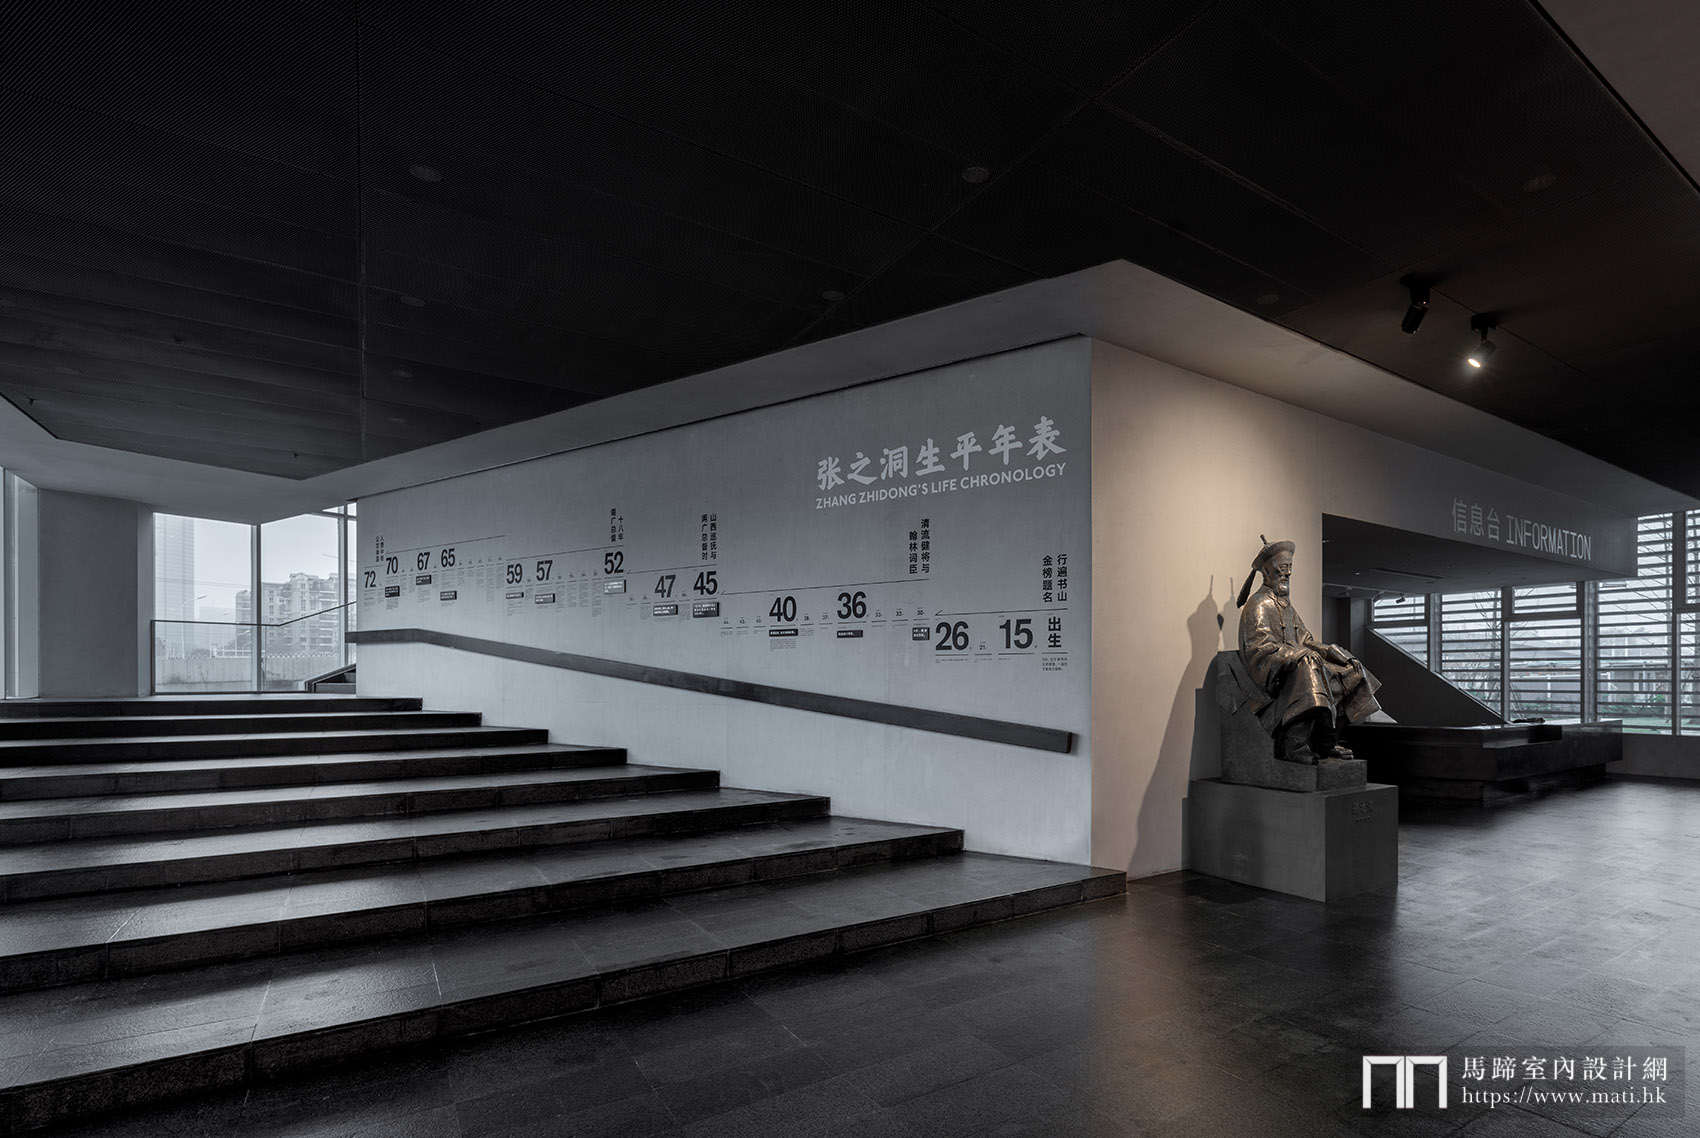 展览:张之洞与武汉博物馆空间叙事,武汉 / 直径叙事工作室